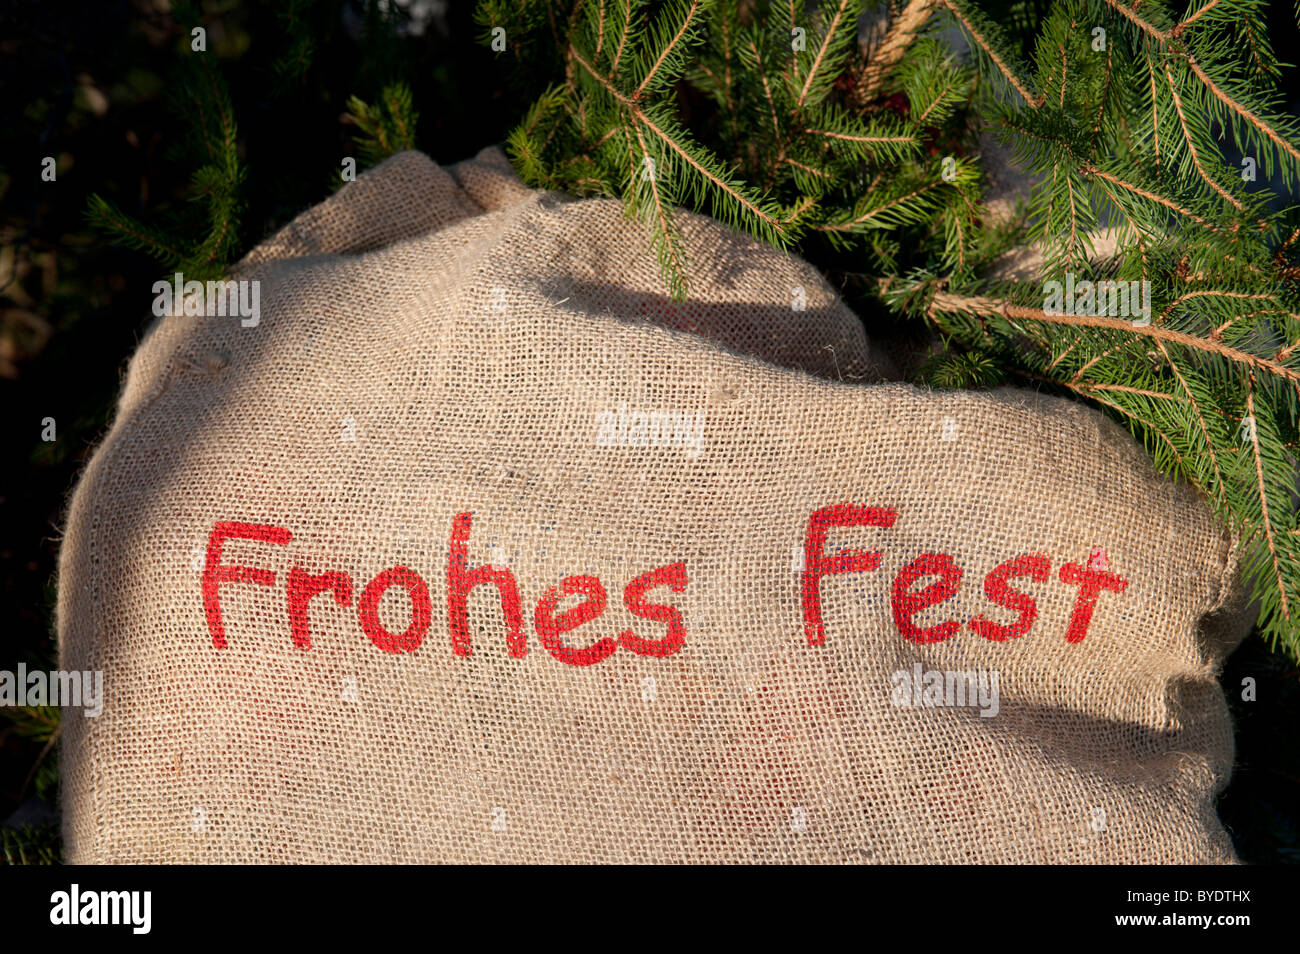 Frohes Fest o Buon Natale, scritta rossa su un sacco di rami di abete rosso Foto Stock